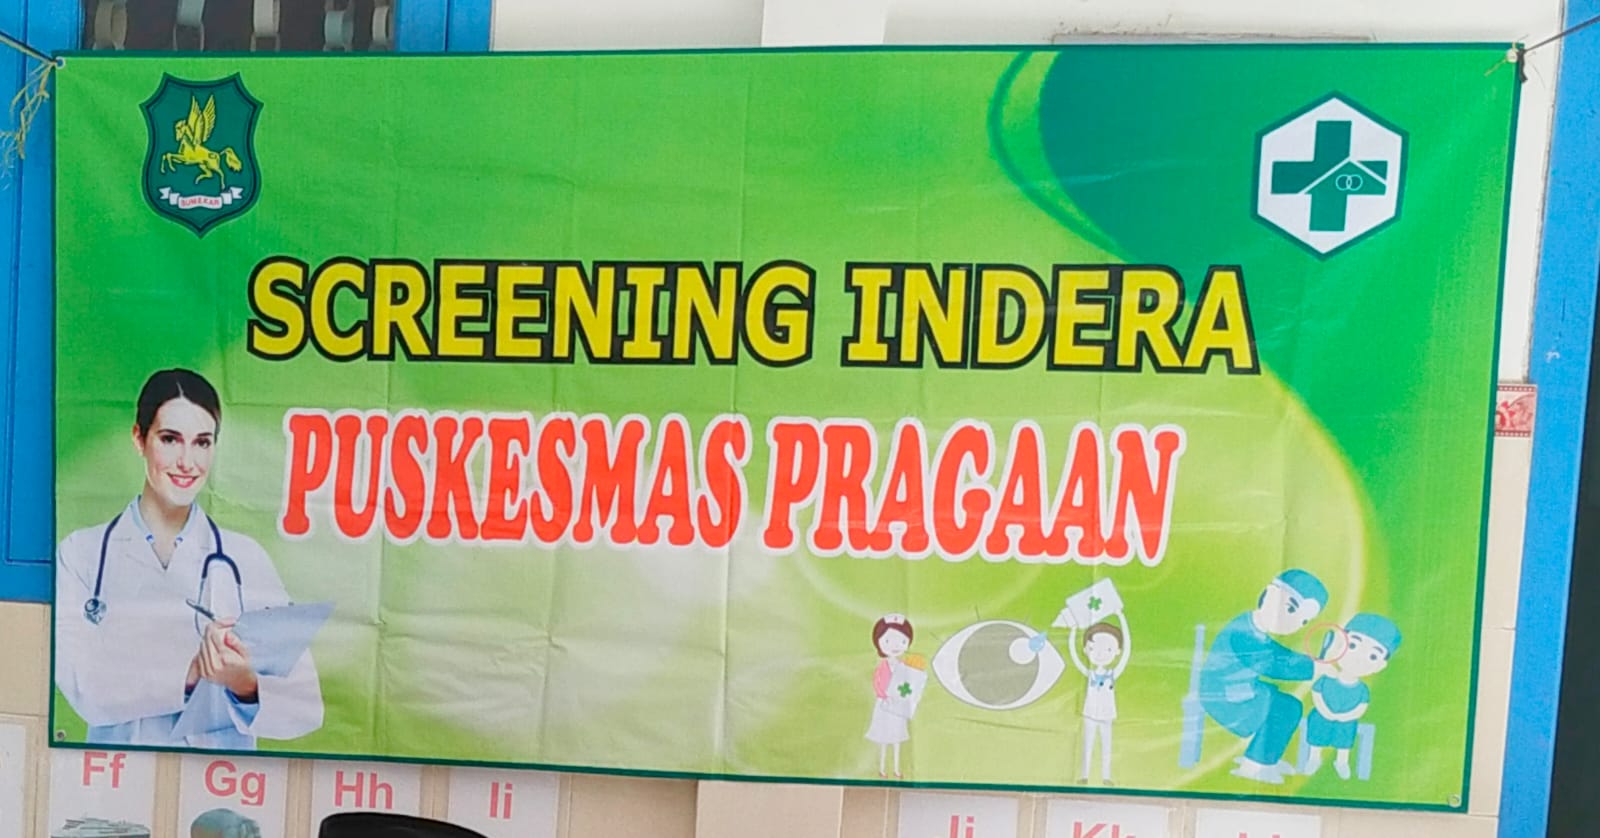 laksanakan Screening Indra bersama UPT Puskesmas Pragaan